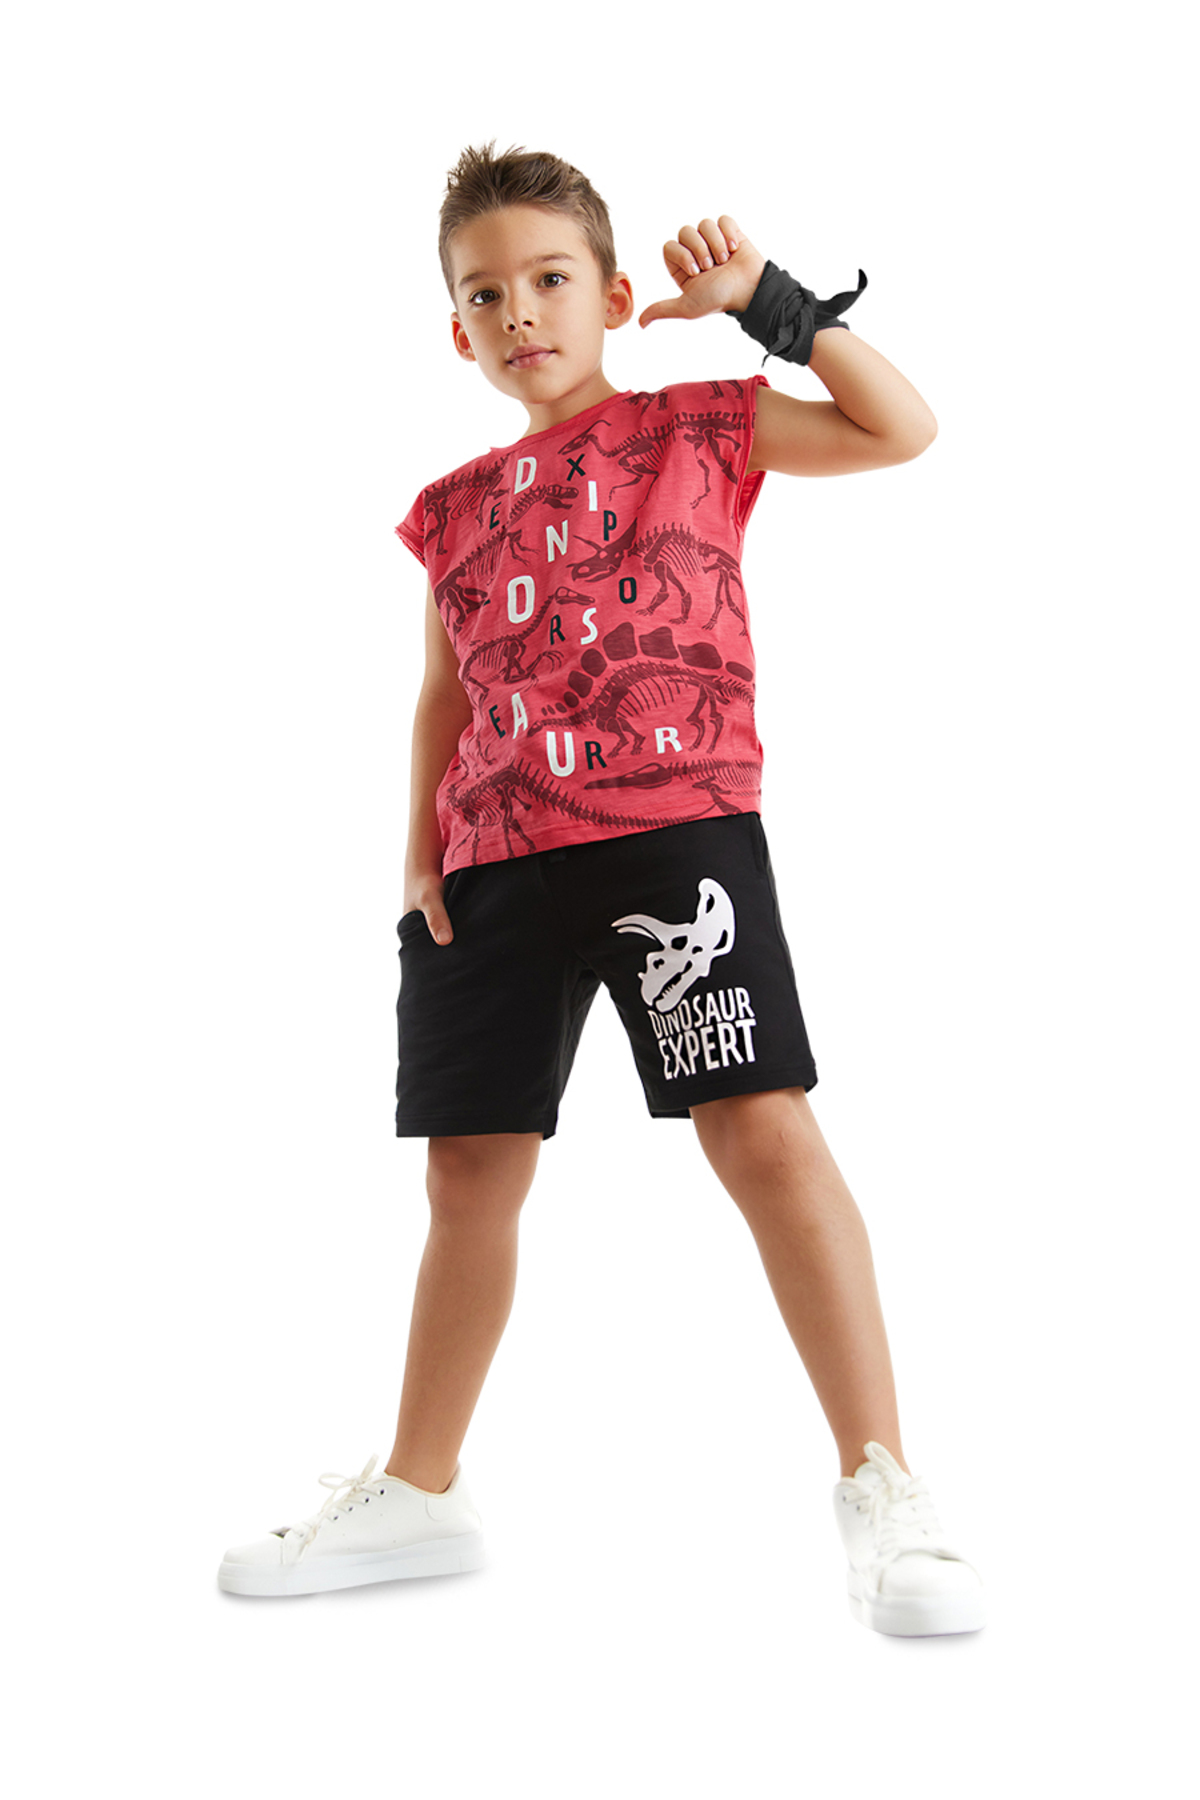 Mushi Dinosaur Expert Boys T-shirt Shorts Set